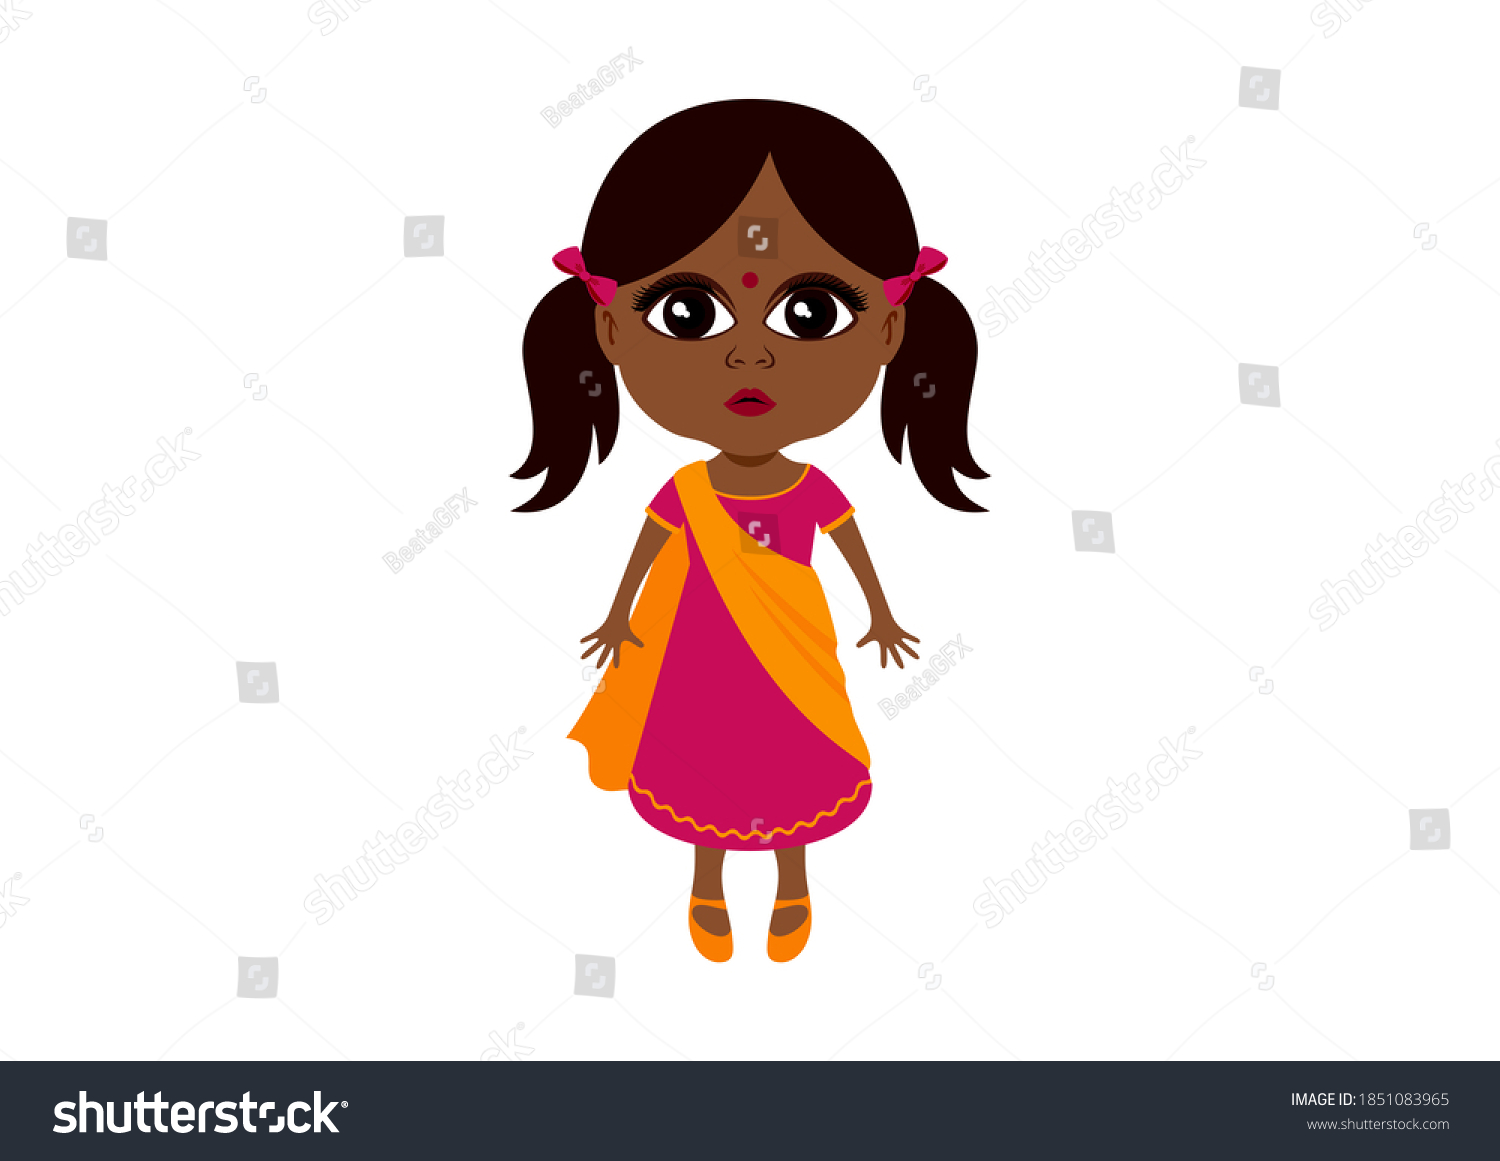 「伝統的なドレスを着たかわいい小さなインド人の女の子のアイコン。 サリのクリップアートにかわいいインドの赤ちゃん女の子。白い背景に美しい少女民族のアイコン。 大きな茶色の目をした小さな女の子の